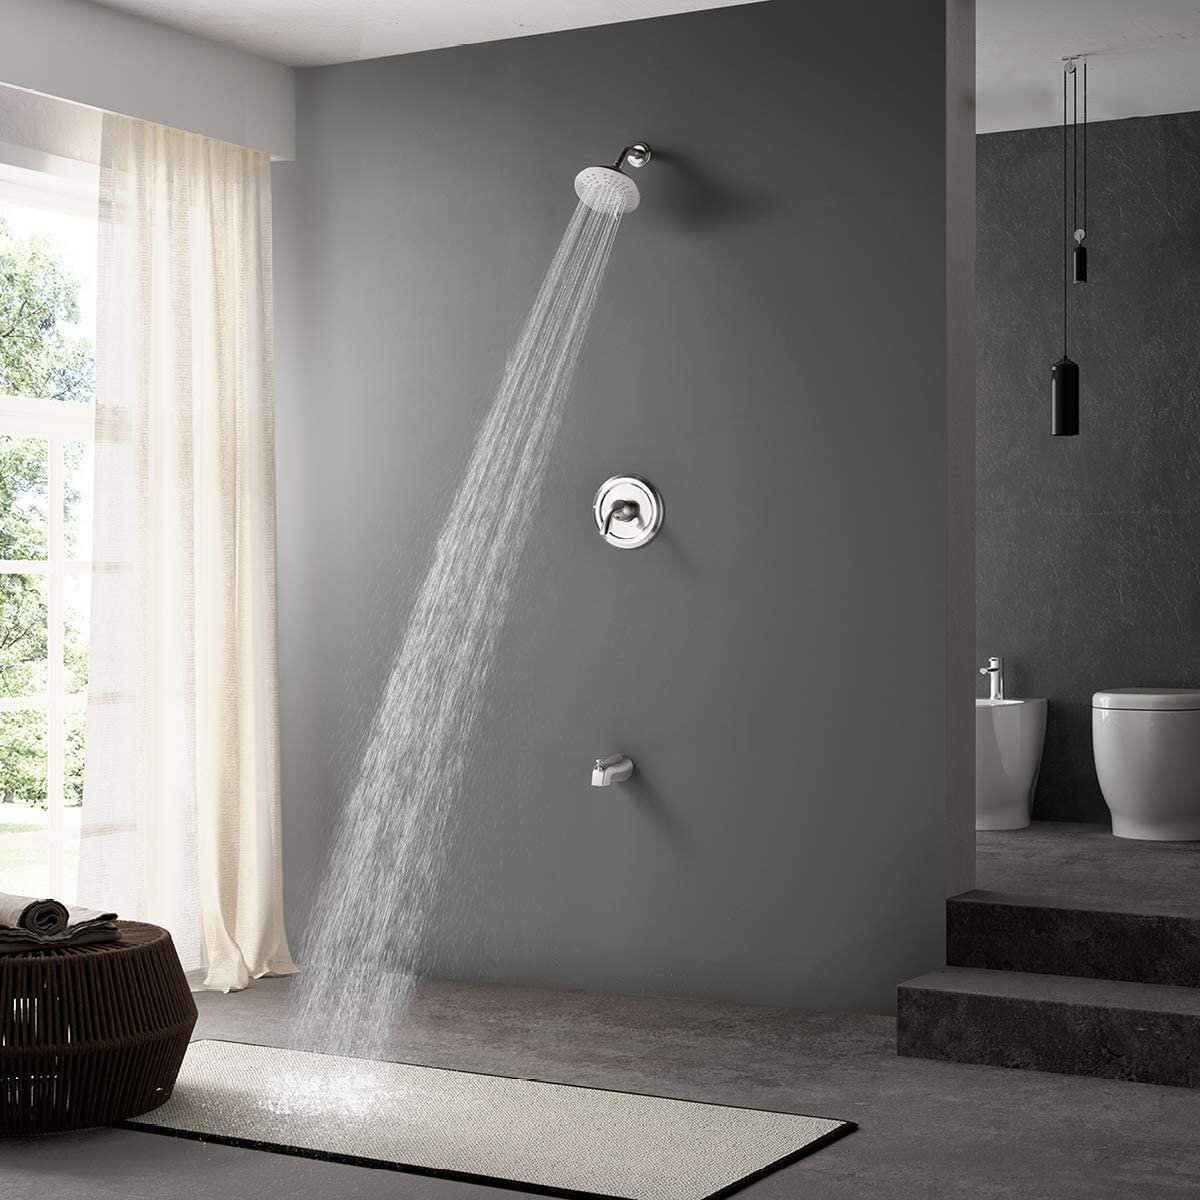 Shower_Faucet